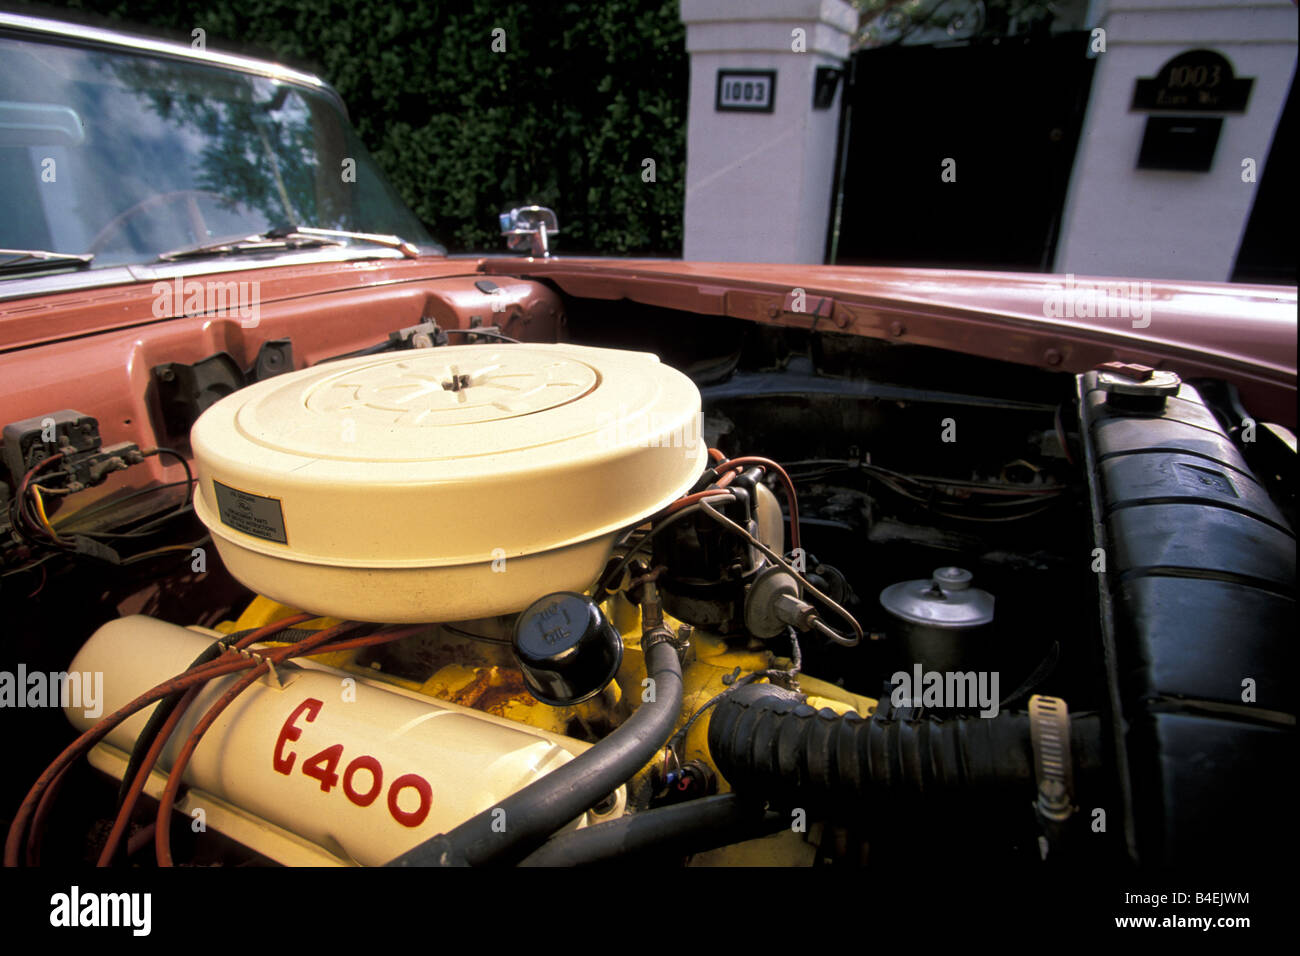 Voiture, Ford Edsel Pacer convertible, l'année de modèle 1957, années 50, années 50, vintage, voiture, capote ouverte, compartiment moteur, fra Banque D'Images